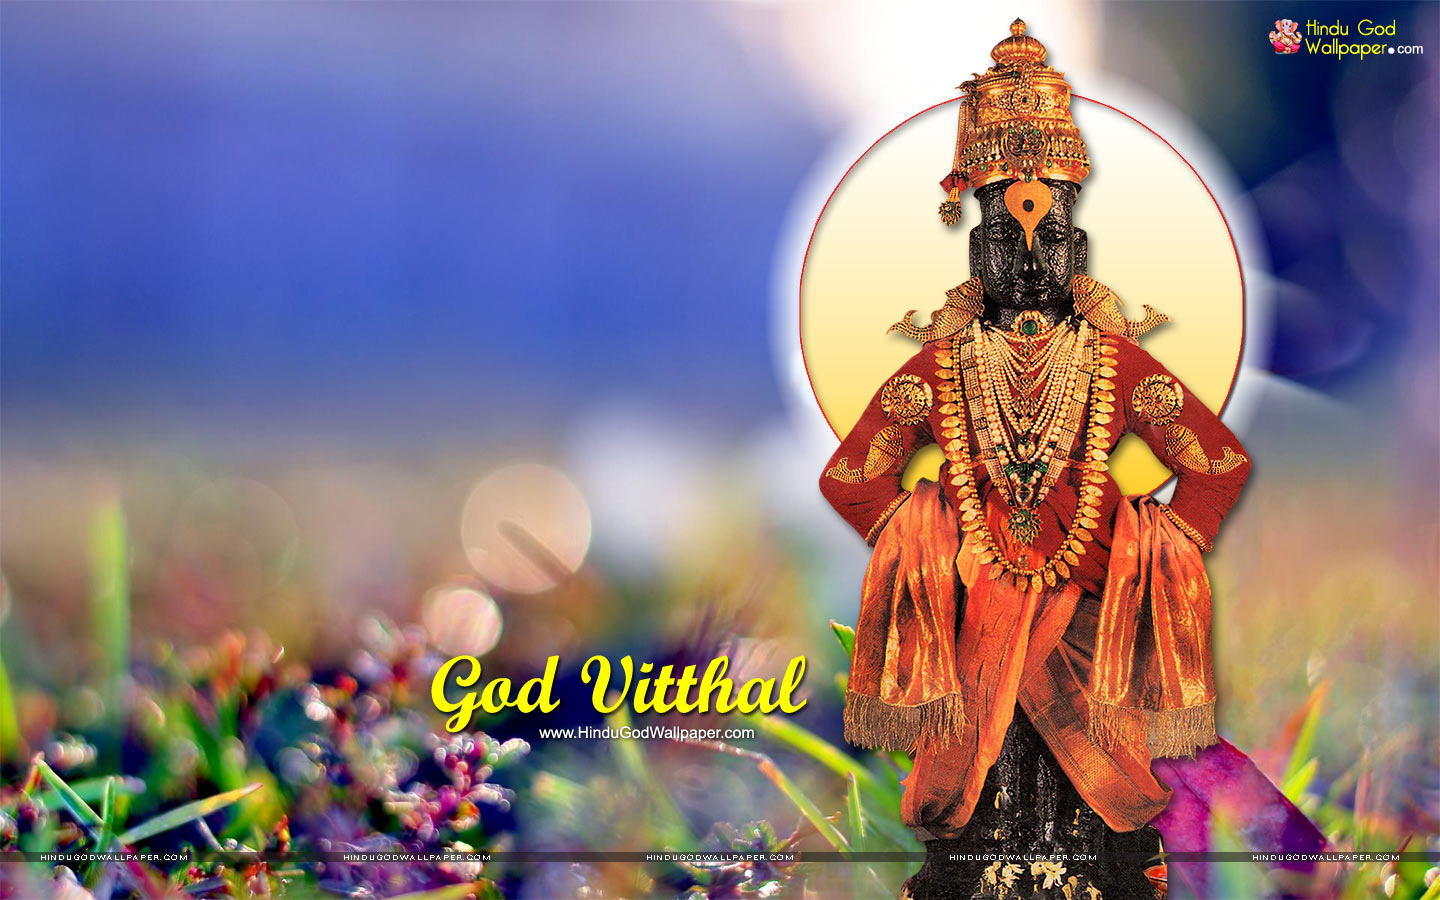 Shri Vitthal Pandharpur Wallpapers Free Download